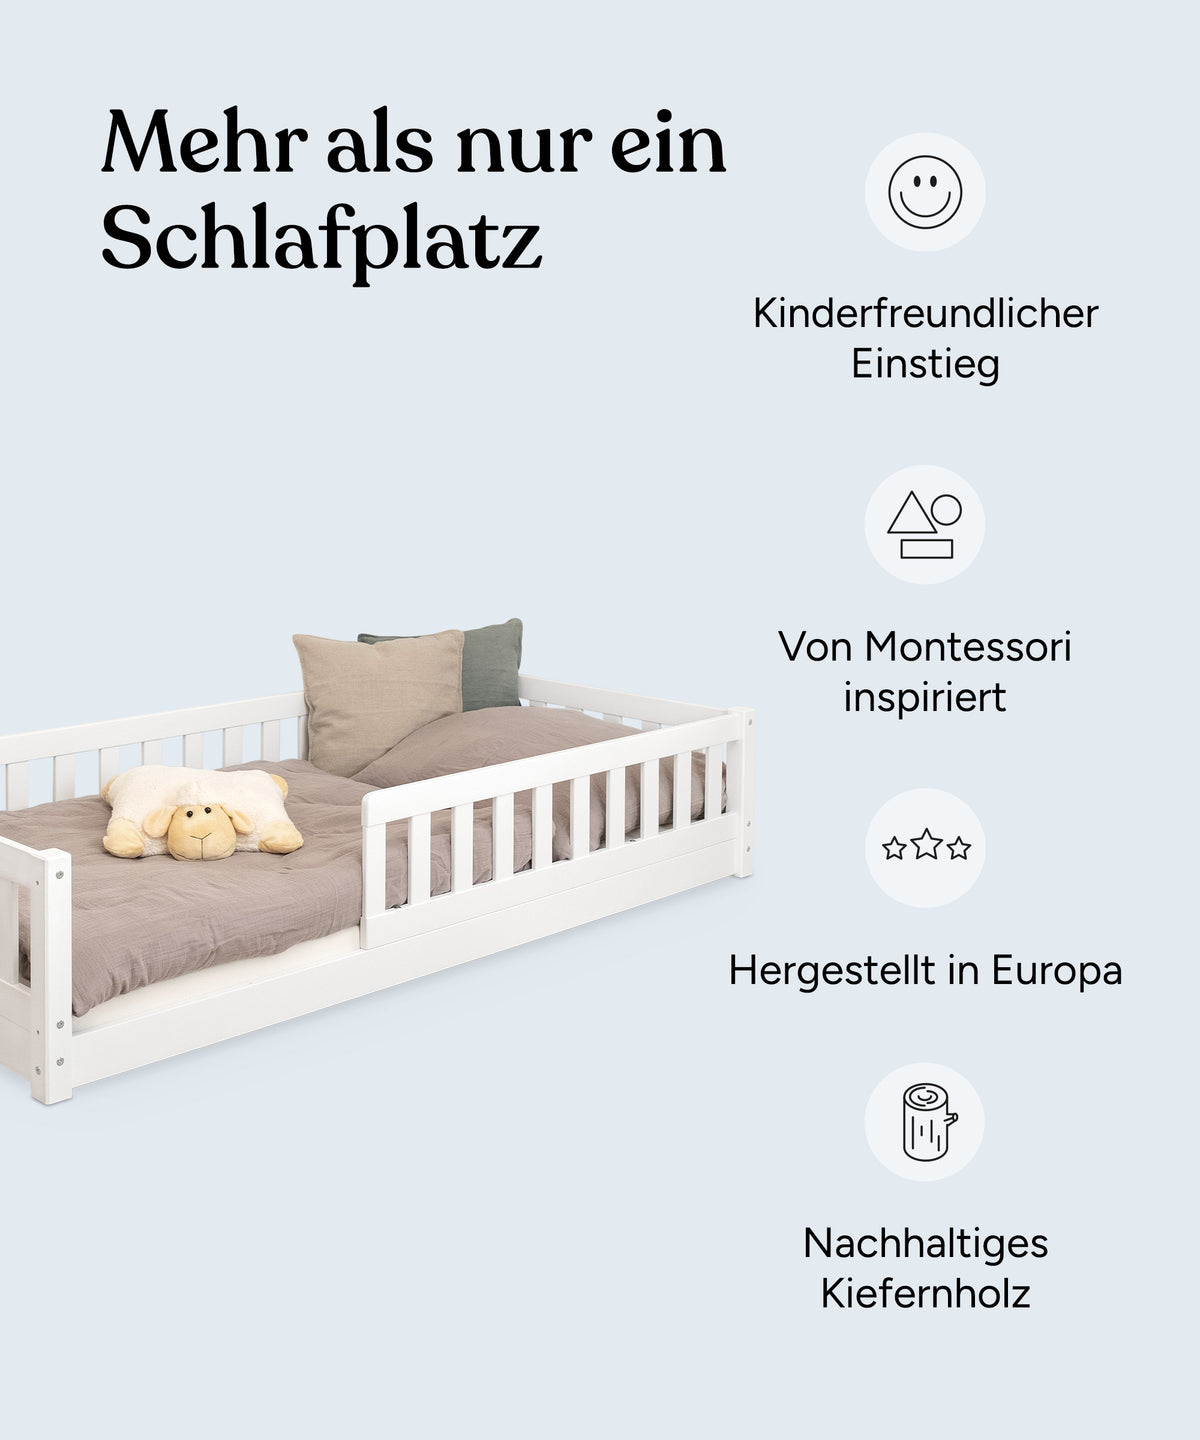 Vorteile Bodenbett Kiefer: Kinderfreundlicher Einstieg, von Montessori inspiriert, hergestellt in Europa, nachhaltiges Kiefernholz.